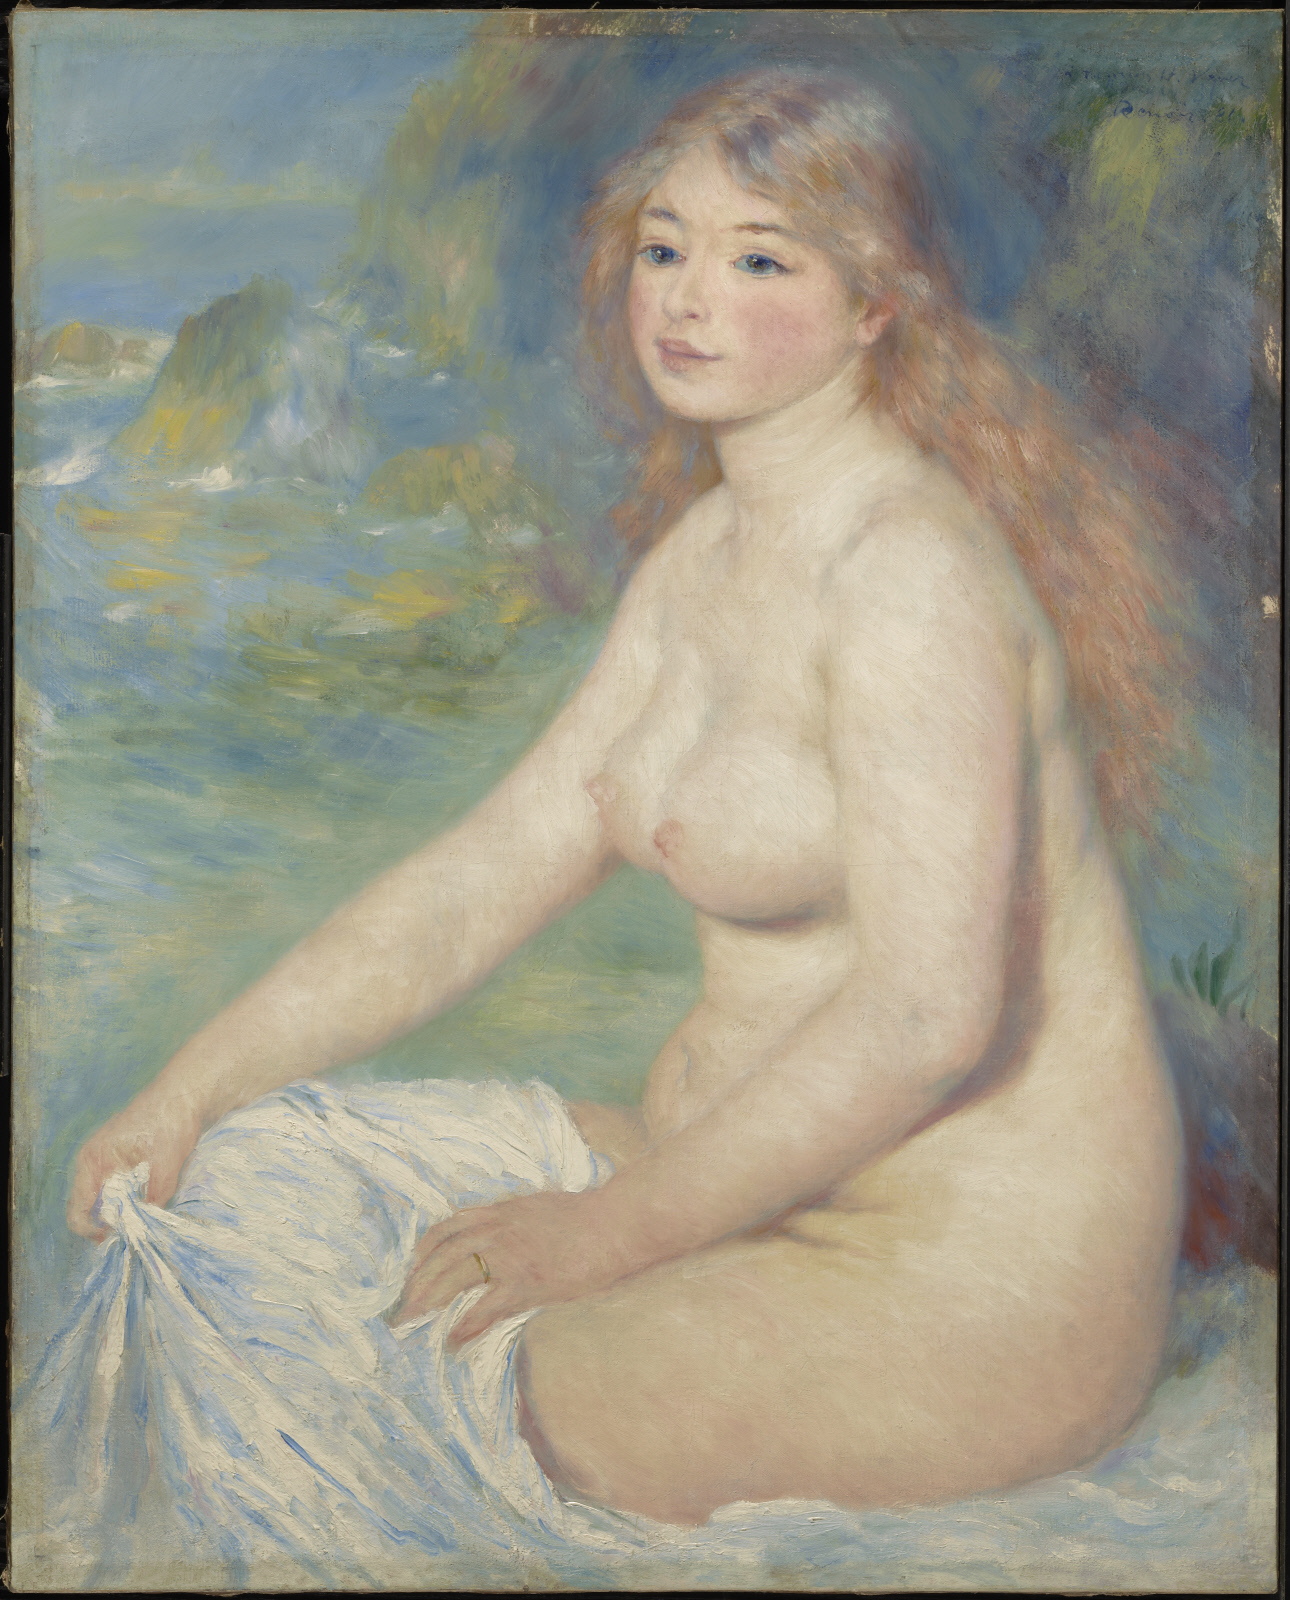 Светловолосая купальщица by Pierre-Auguste Renoir - 1881 - 81.6 x 65.4 см 